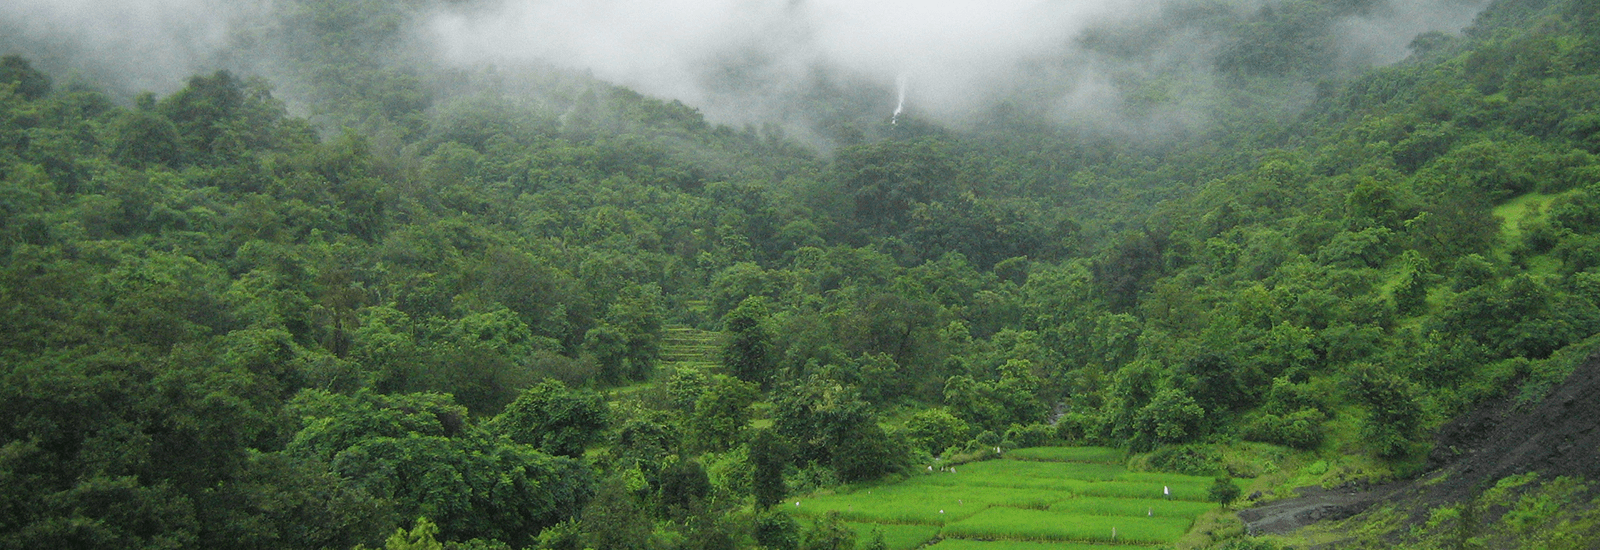 jungles-monsoon-season